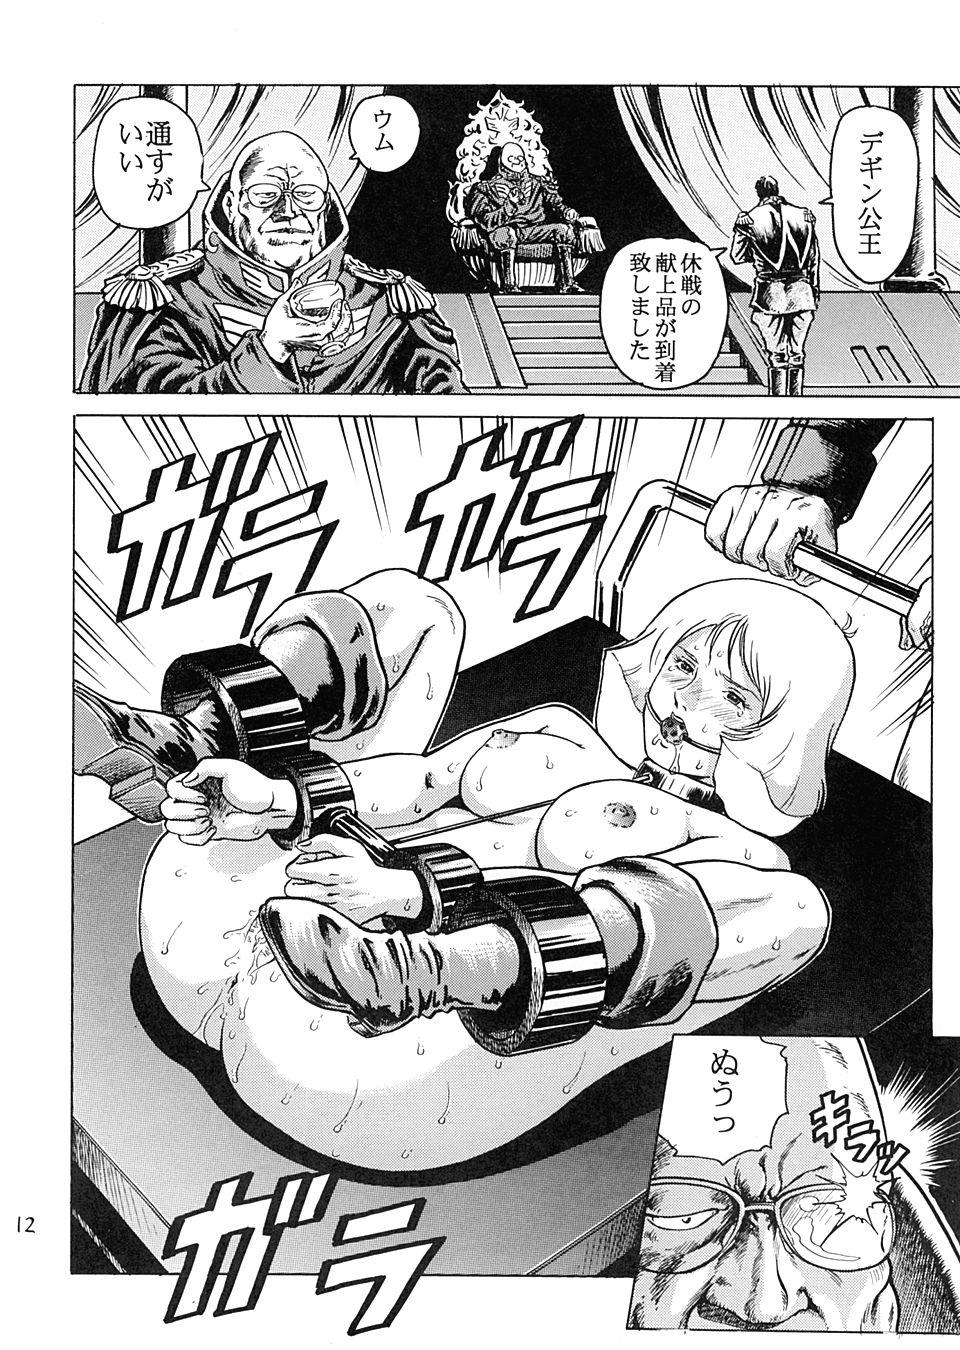 Gaybukkake Kinpatsu no Sasage Mono - Mobile suit gundam Teacher - Page 11